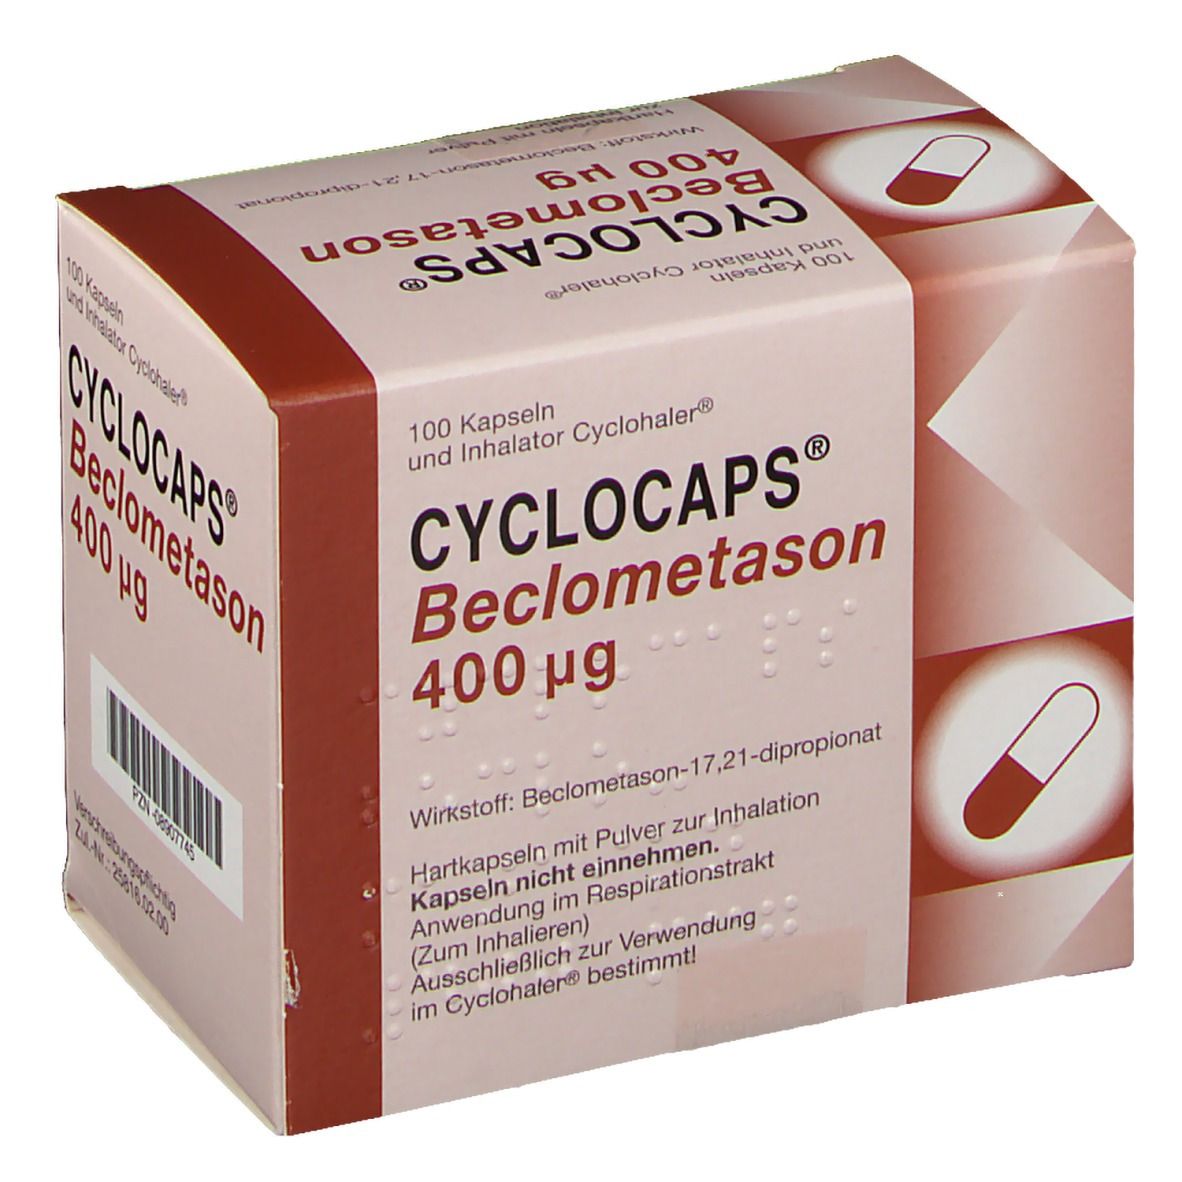 CYCLOCAPS Beclometason 400 µg